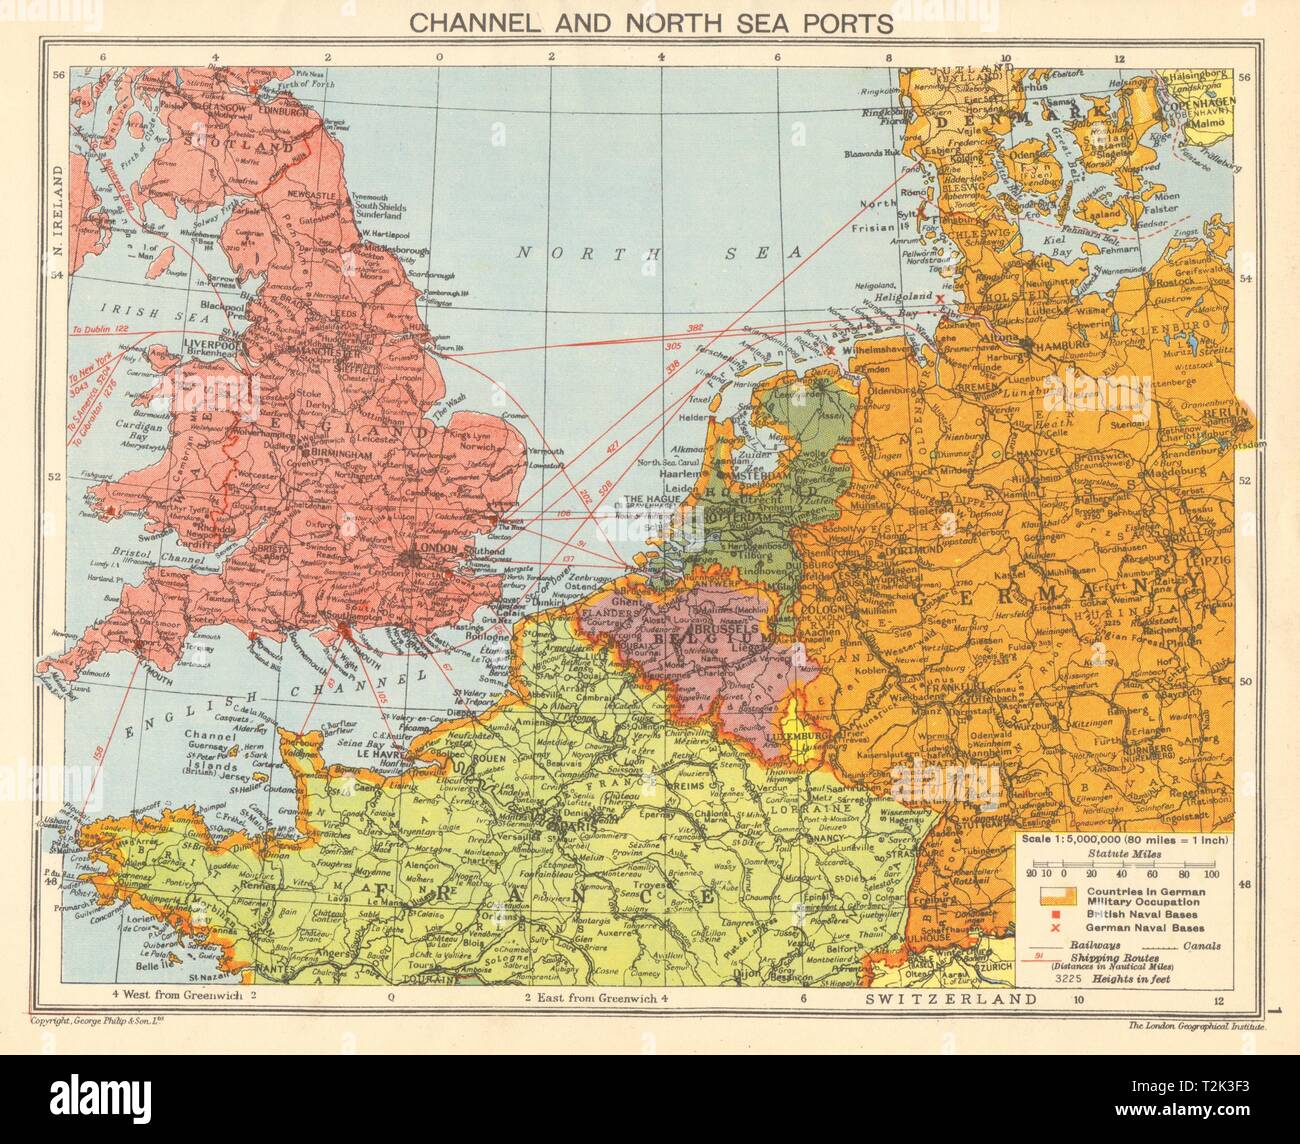 Guerra Mundial 2 Canal Ingles Y Puertos Del Mar Del Norte Aleman Occupied Europe 1942 Mapa T2k3f3 